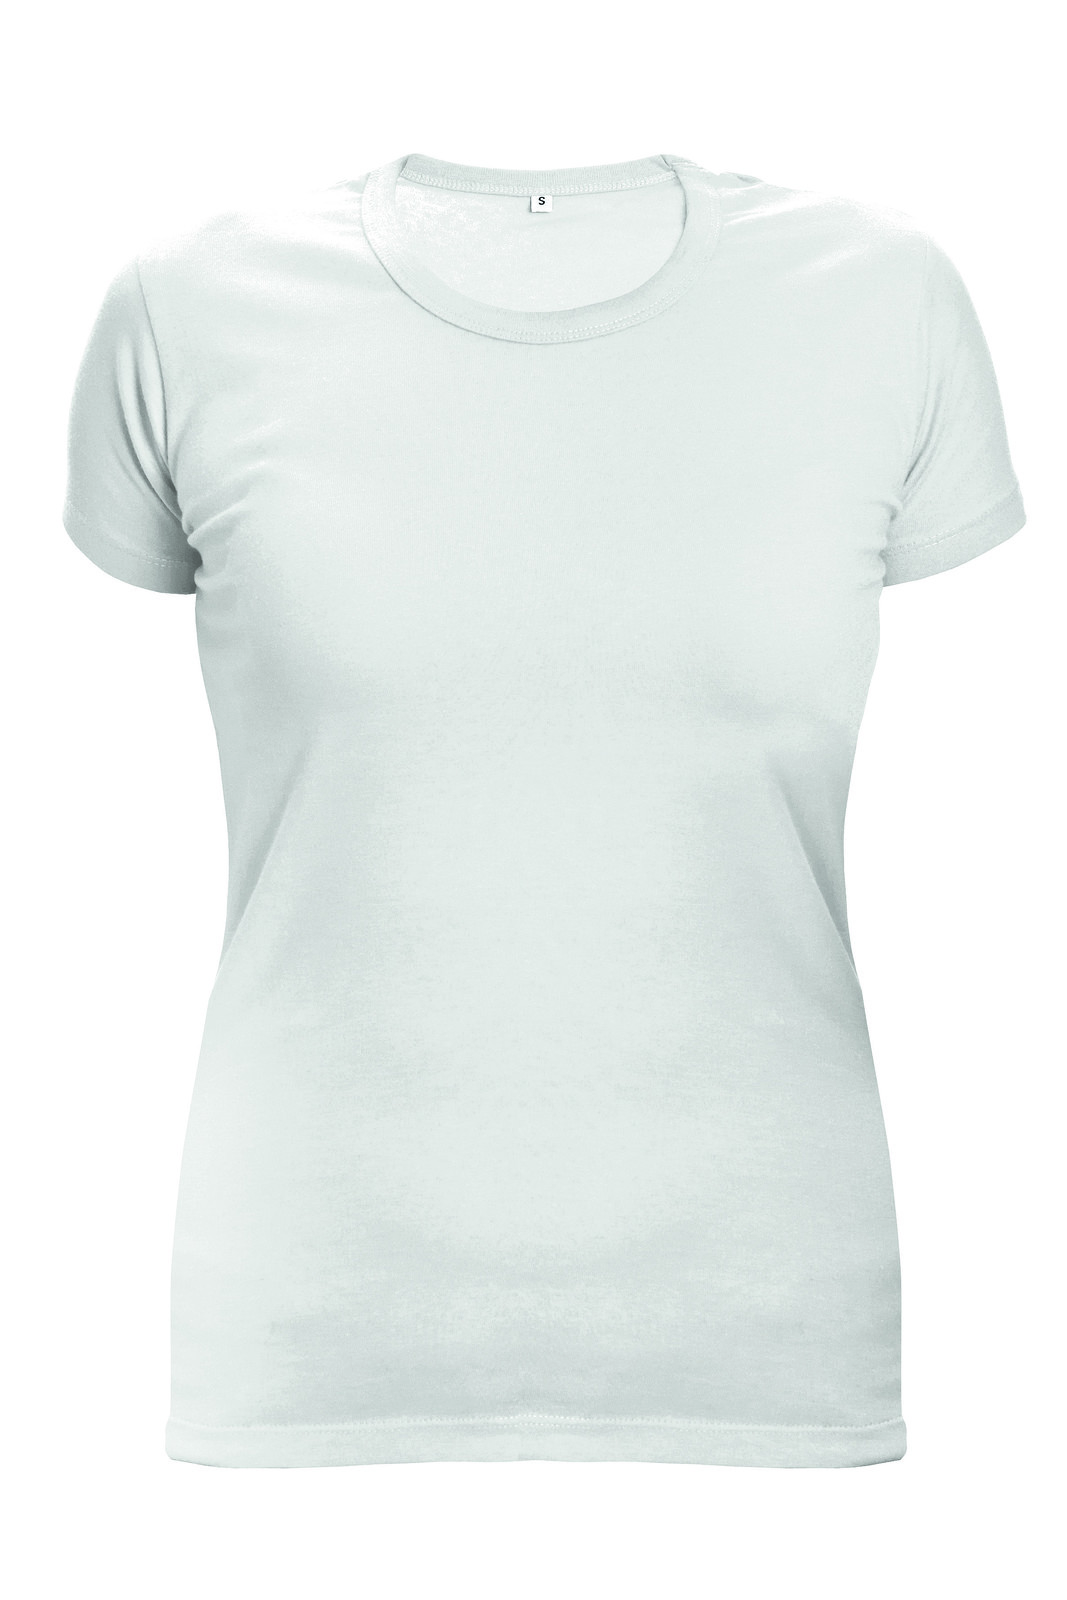 Dámske tričko s krátkym rukávom Surma Lady - veľkosť: XXL, farba: biela